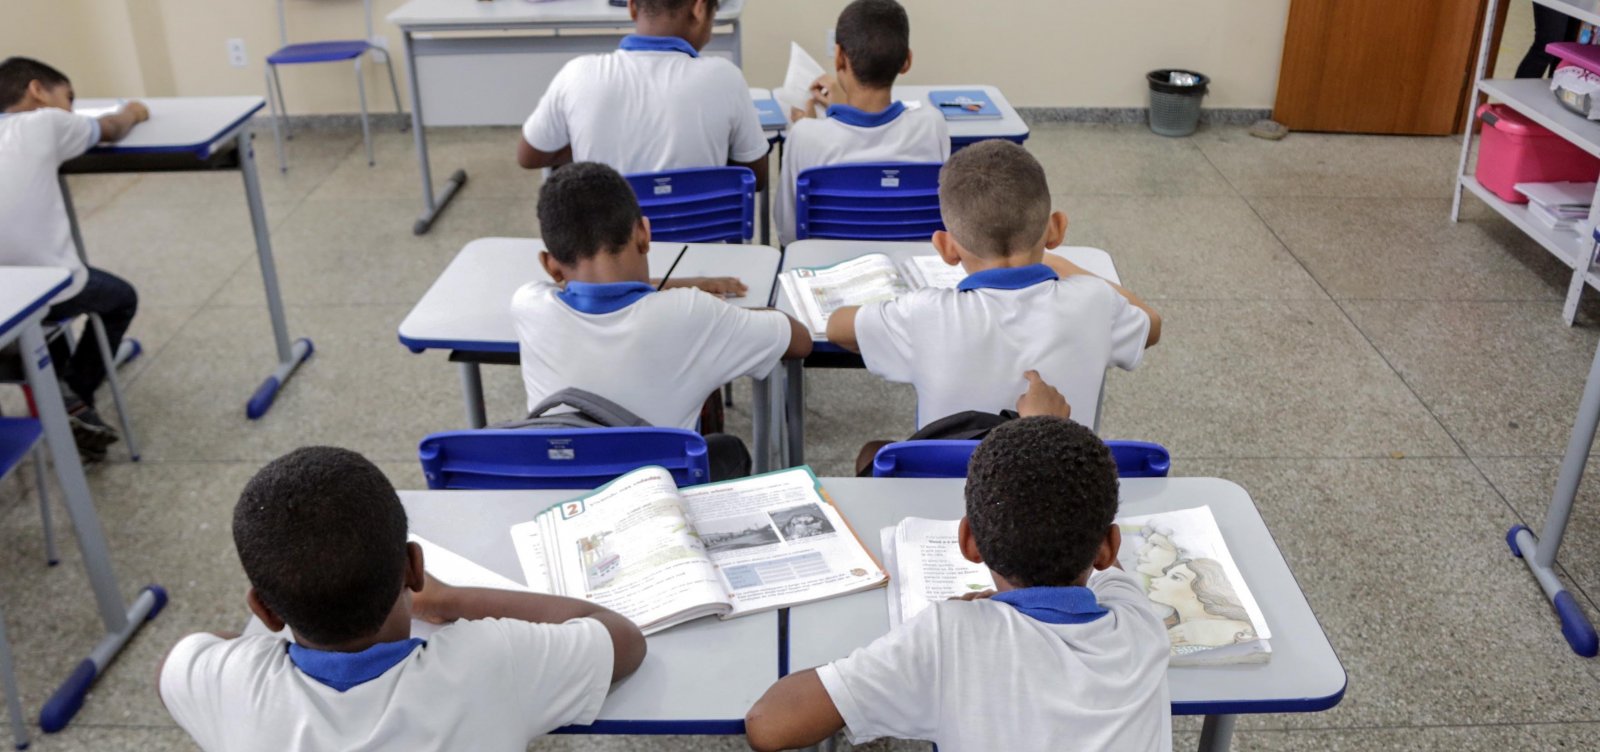 ACM Neto decreta suspensão das aulas em escolas e faculdades por mais 15 dias